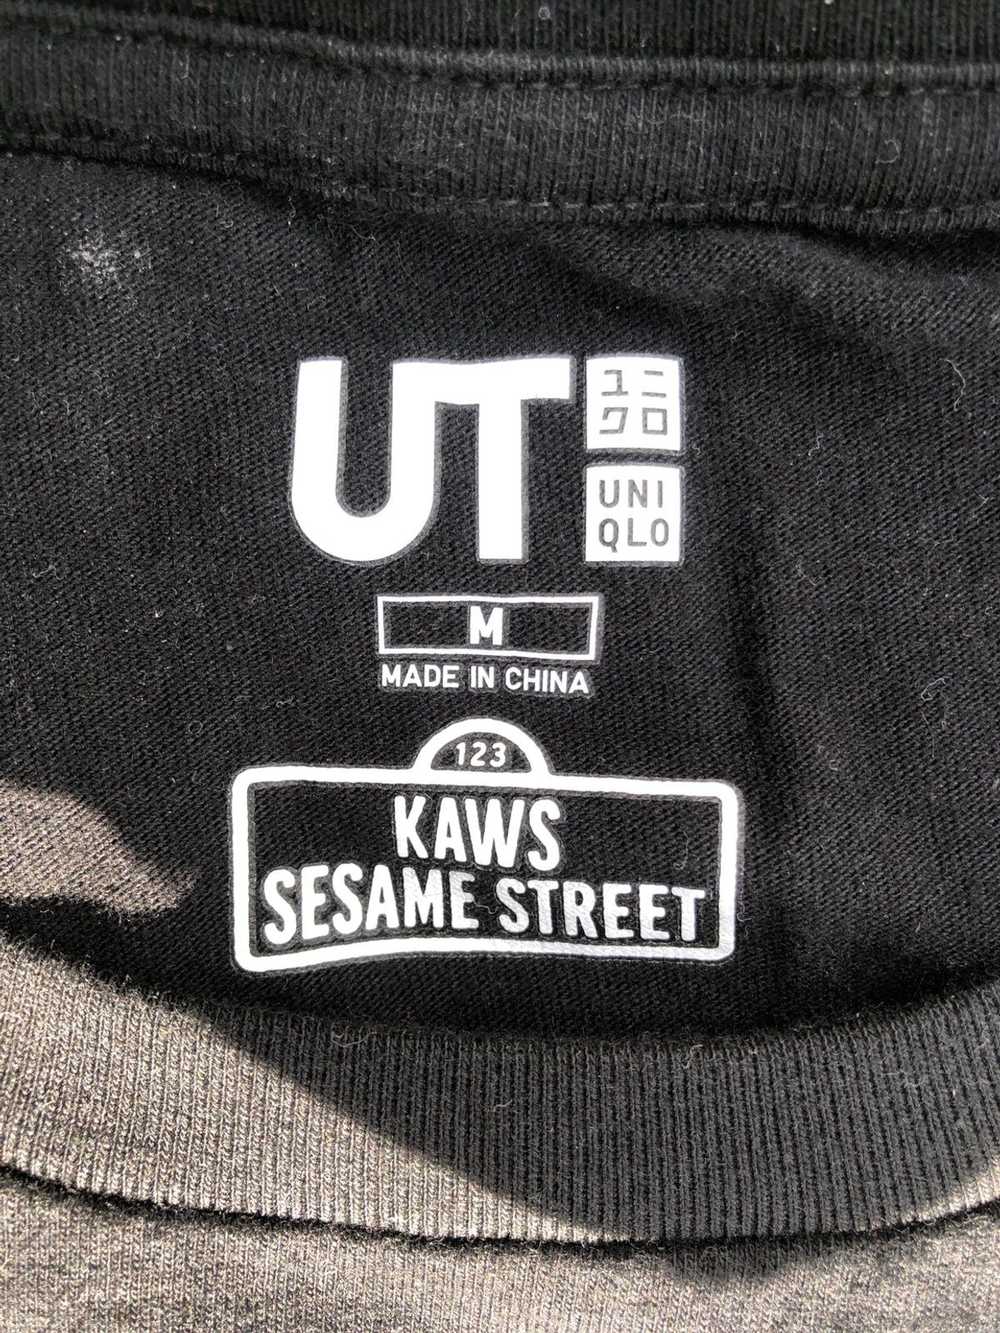 Kaws Kaws x Sesame Street collab - image 2